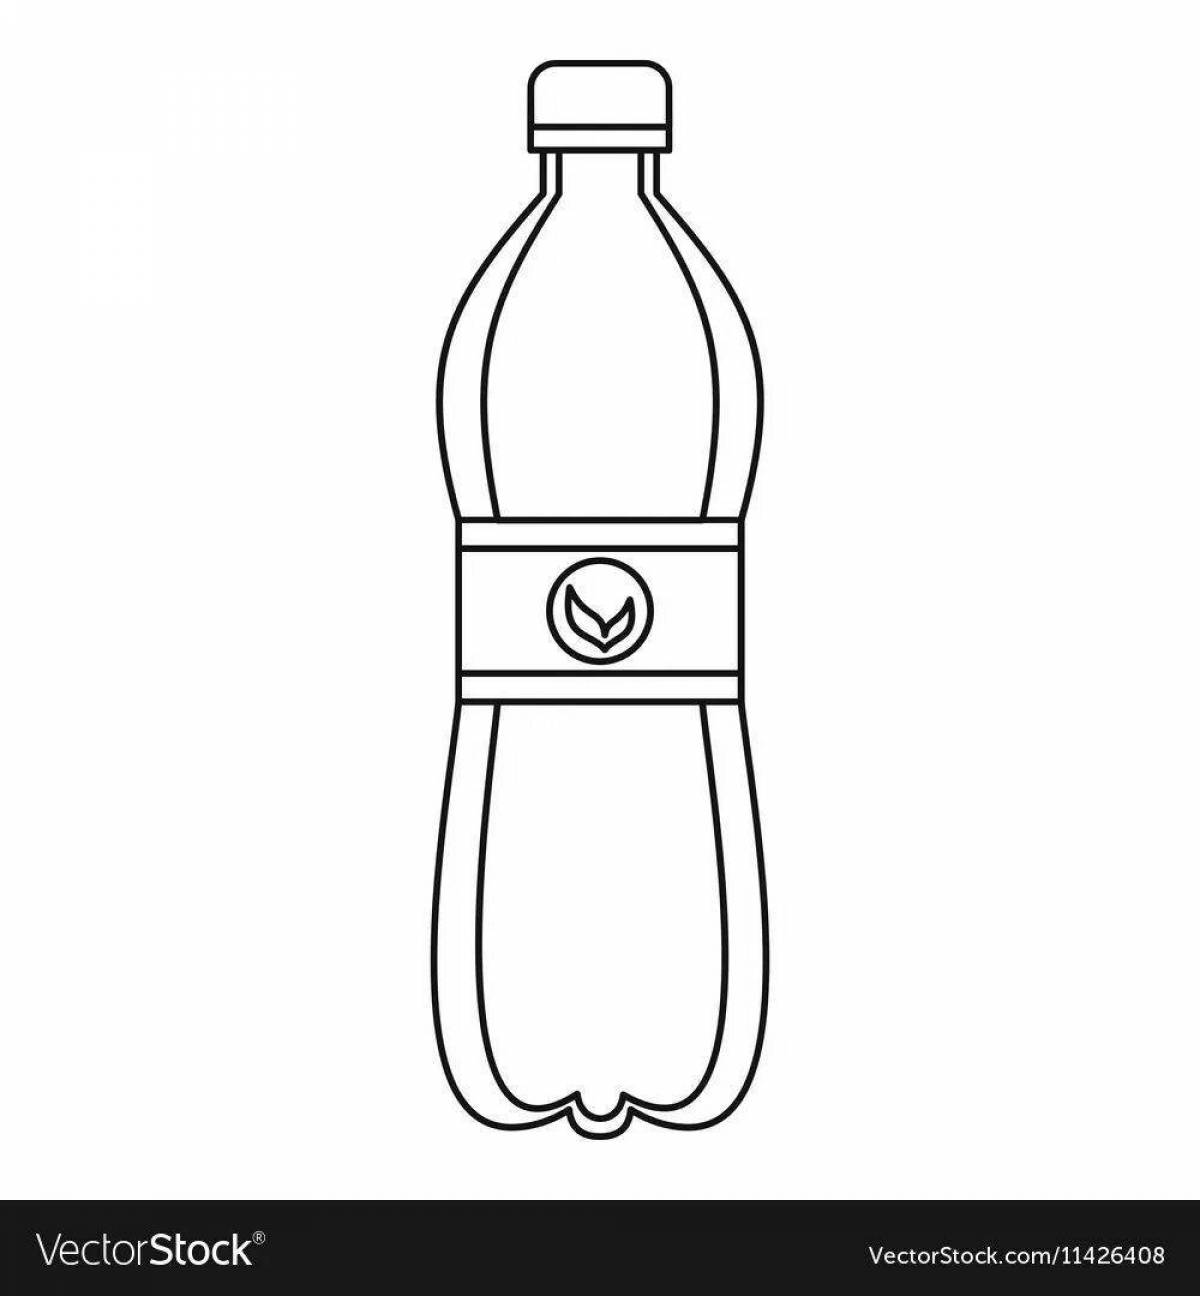 Children's bottle #13